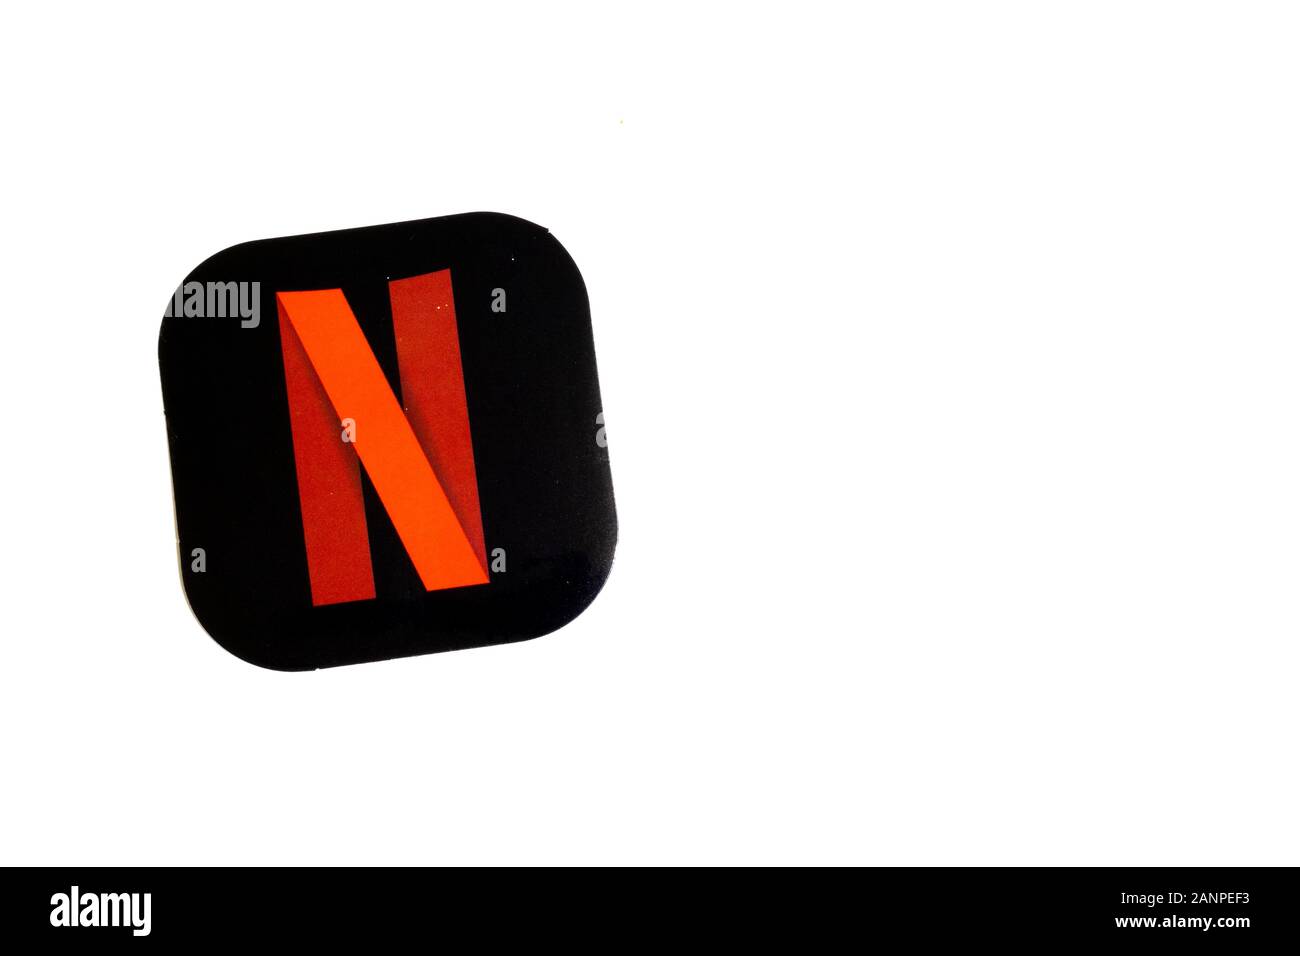 Los Angeles, Californie, États-Unis - 17 janvier 2020: Logo Netflix avec espace de copie, éditorial illustratif Banque D'Images